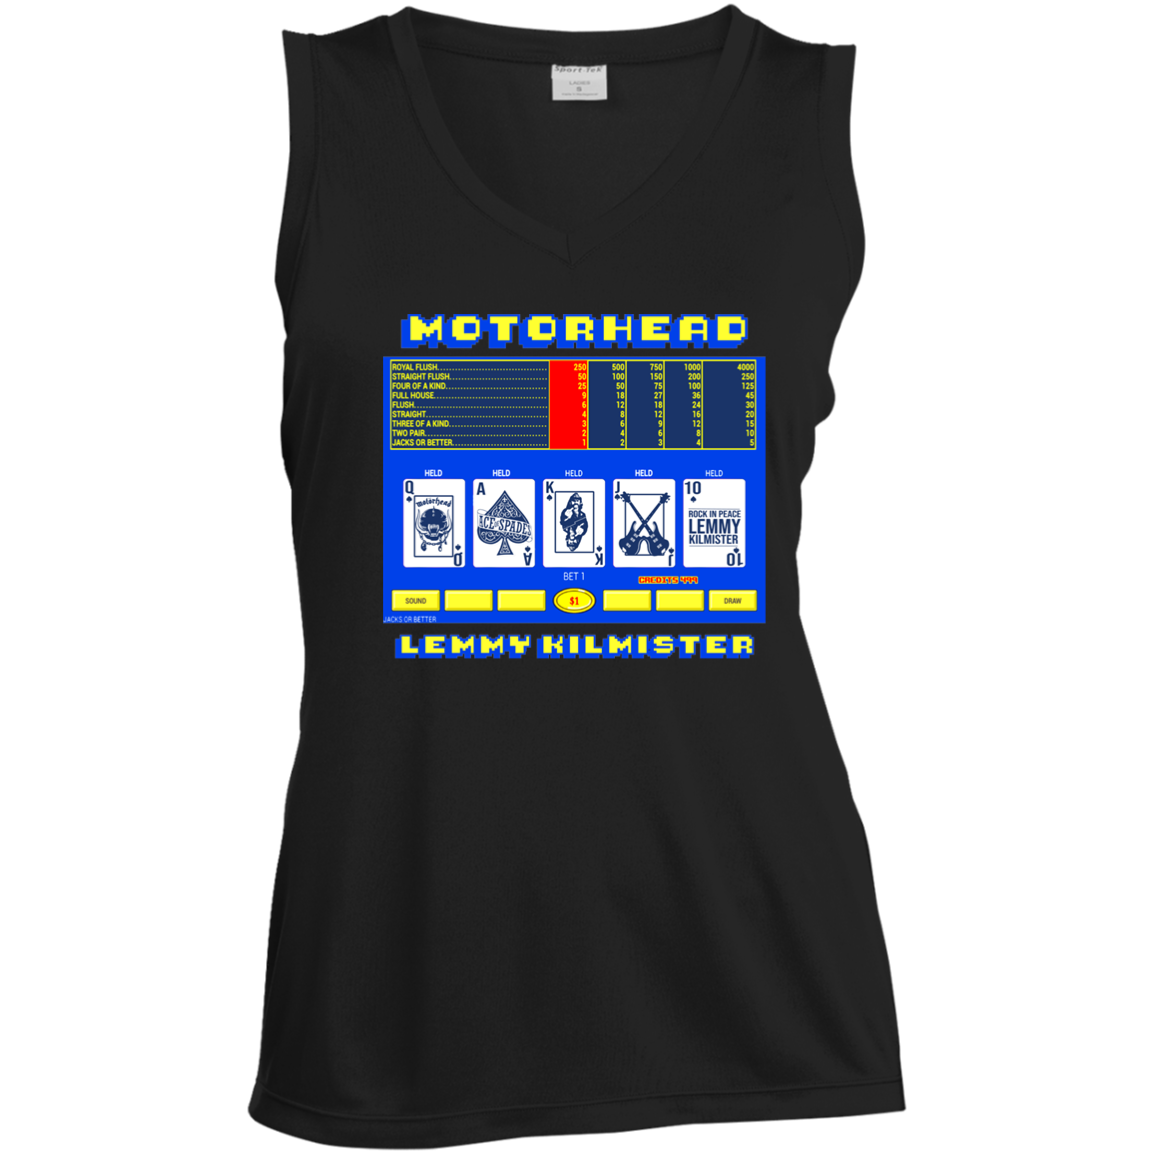 ArtichokeUSA Custom Design. Motorhead's Lemmy Kilmister's Favorite Video Poker Machine. Rock in Peace! Ladies' Sleeveless V-Neck